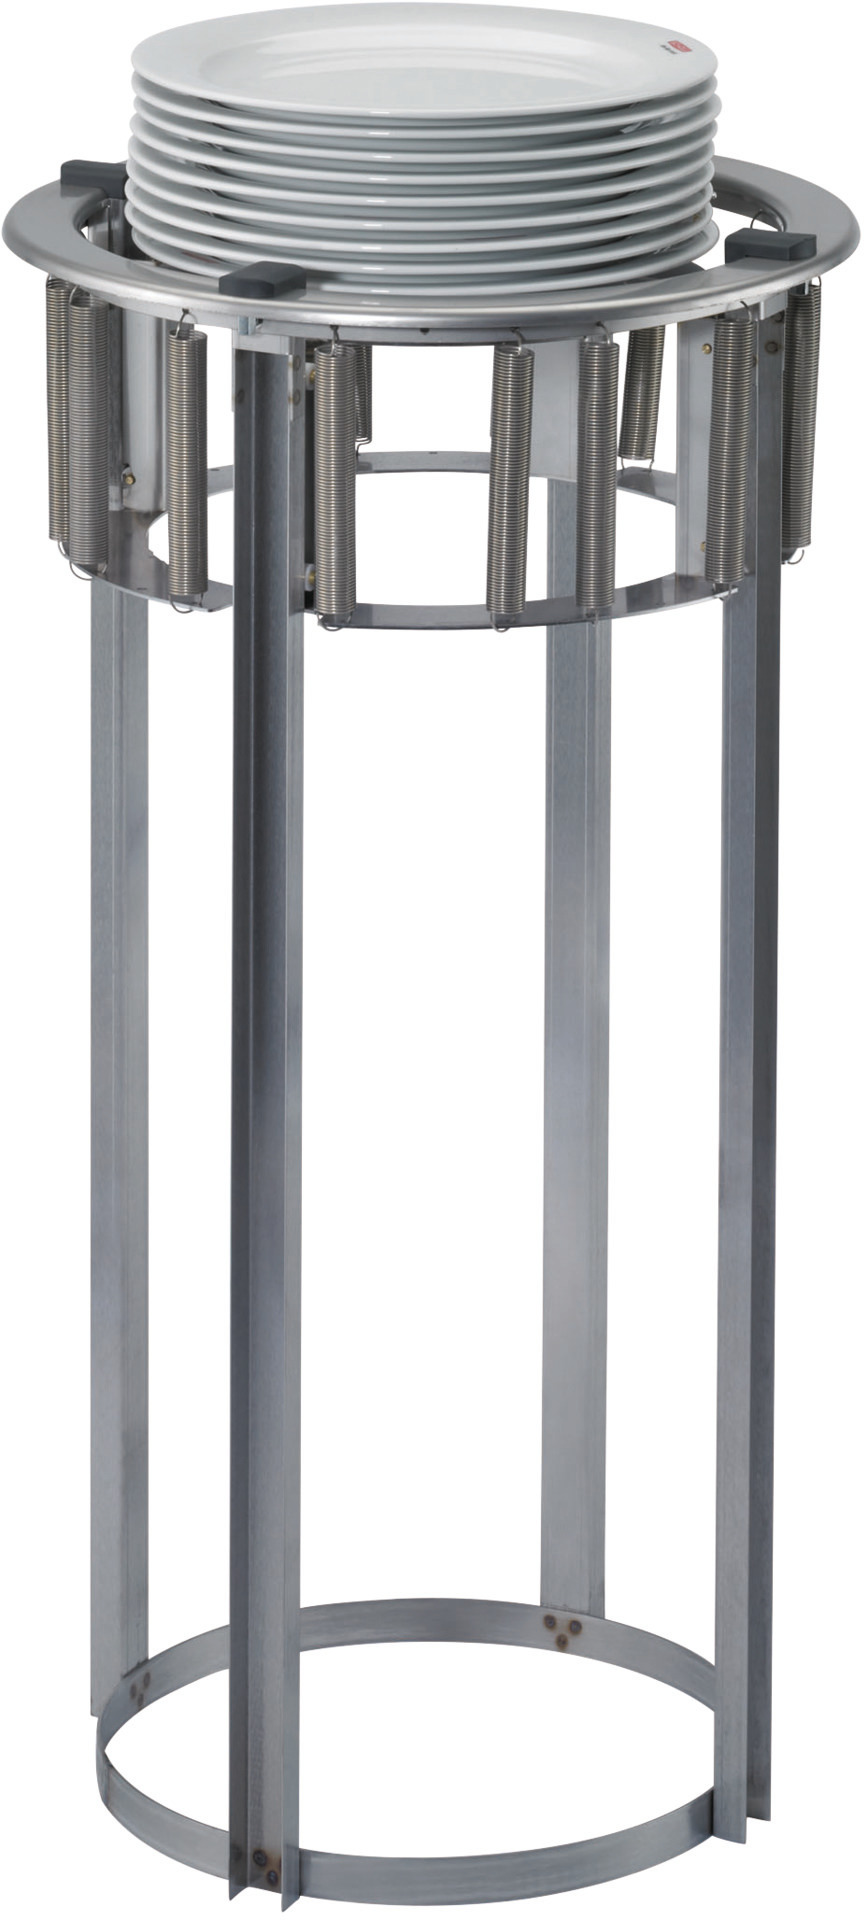 Teller-Einbauspender unbeheizt für 50  Teller 160 - 208 mm Einbautiefe 760 mm